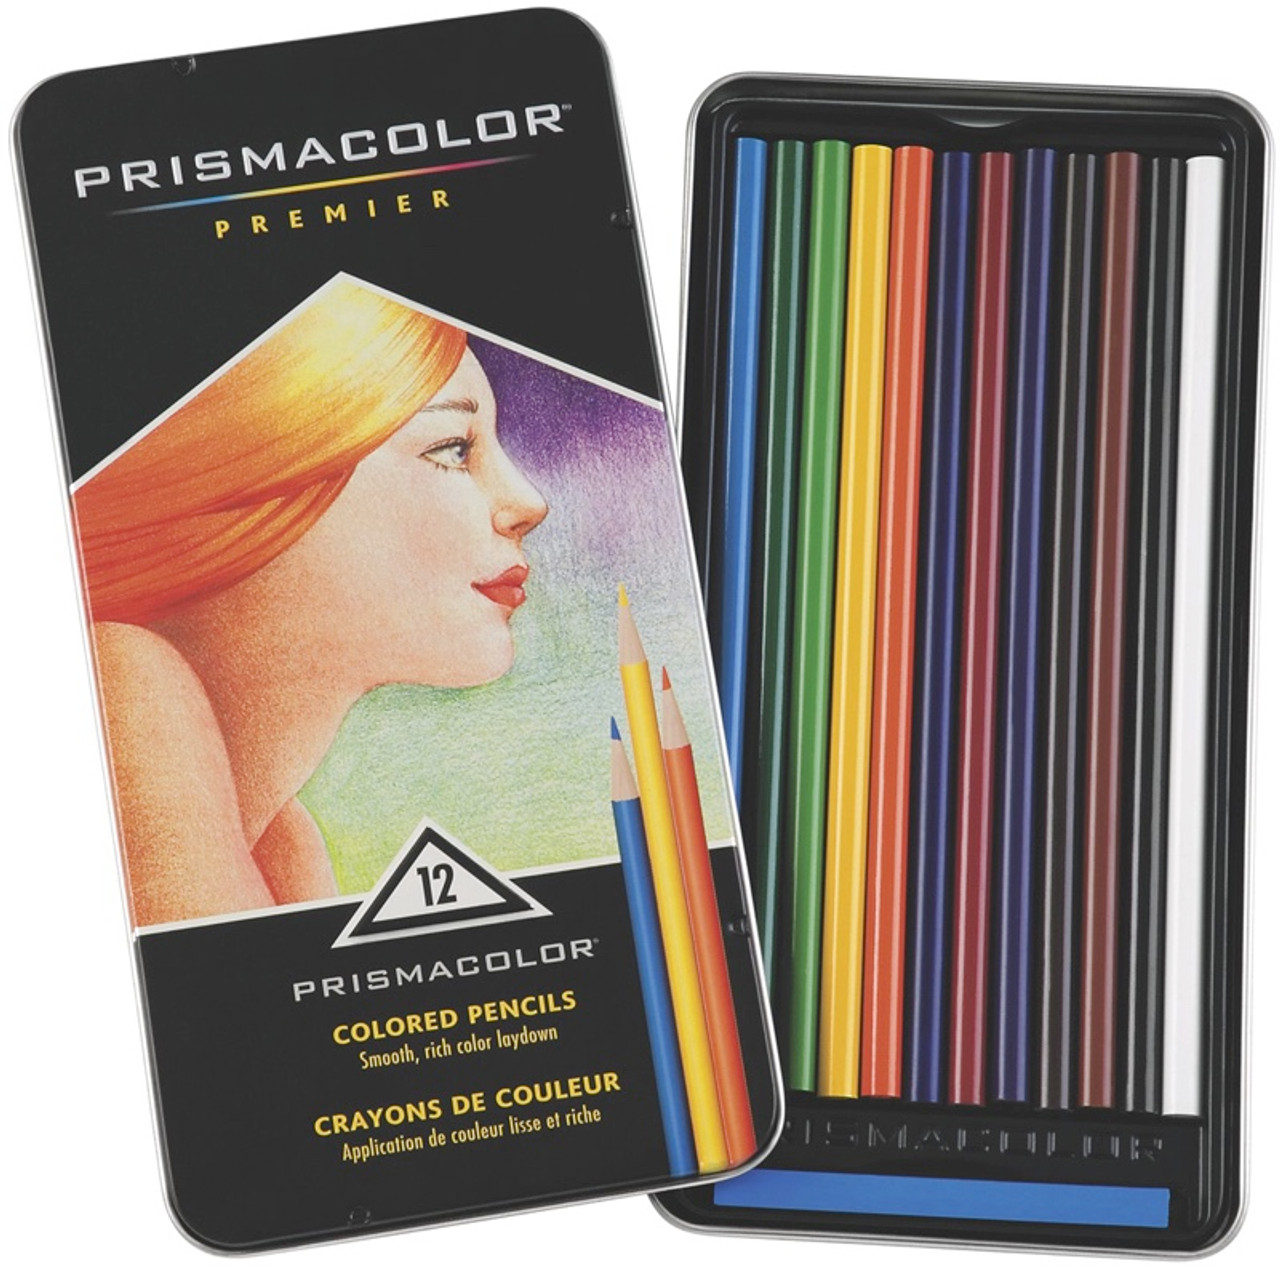 Prismacolor Technique, Art Supplies with Digital Art Lessons, Level 1 –  ShopEZ USA